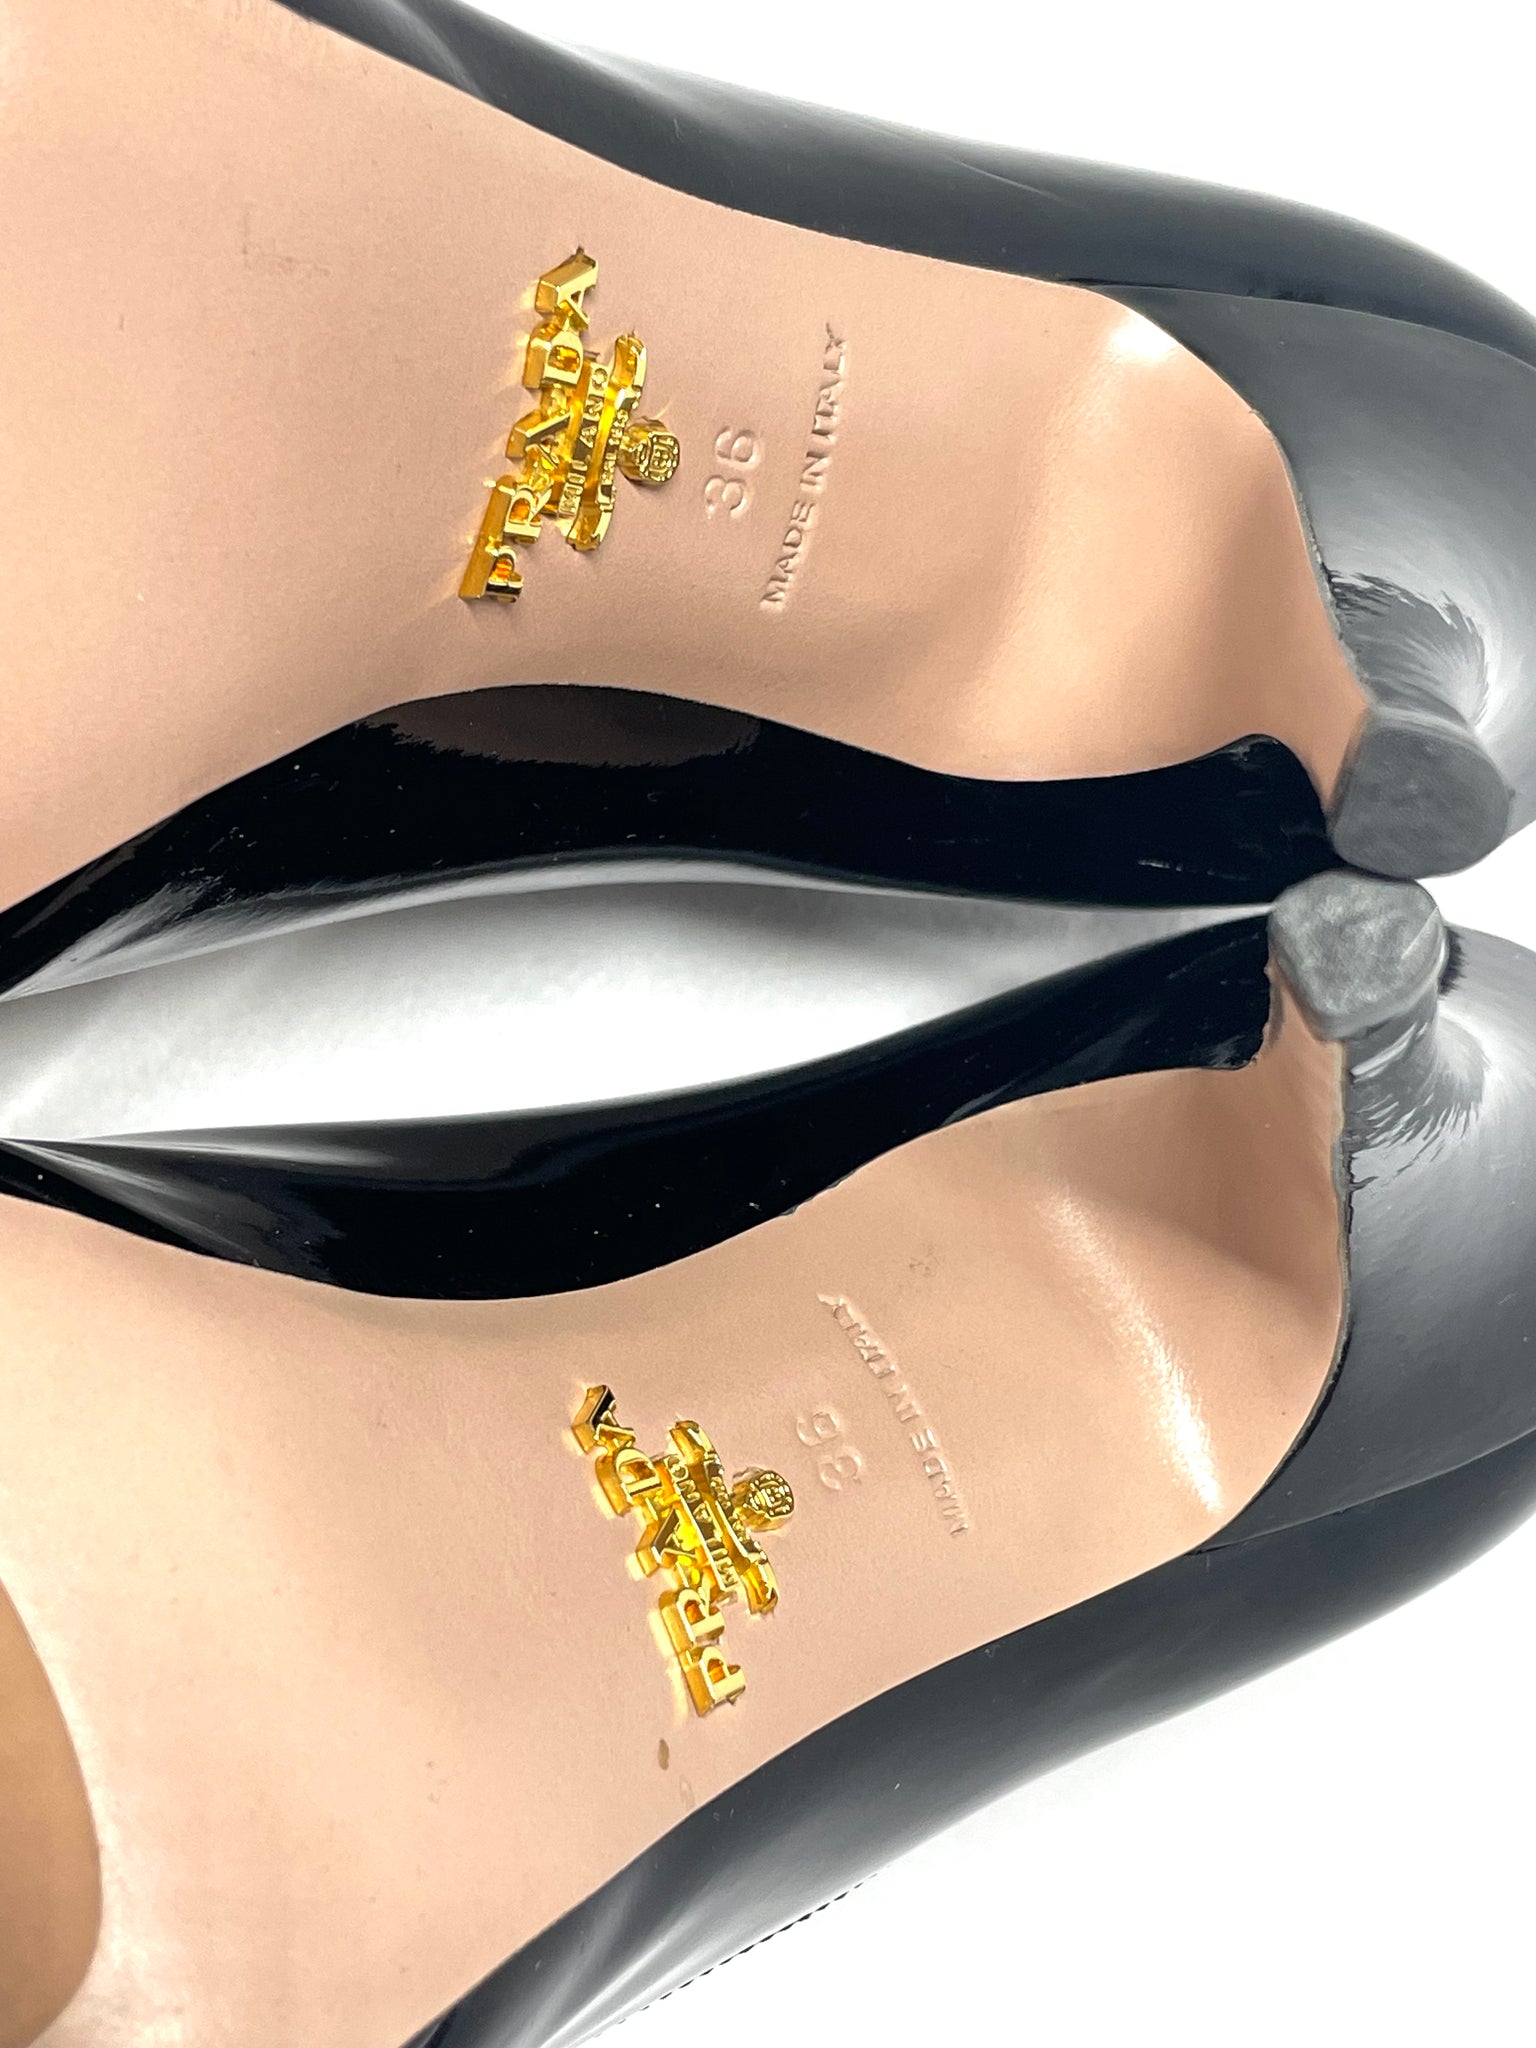 Pre Loved Prada Patent Peep Toe Pumps 36 Black Heels available at UniKoncept in Waterloo